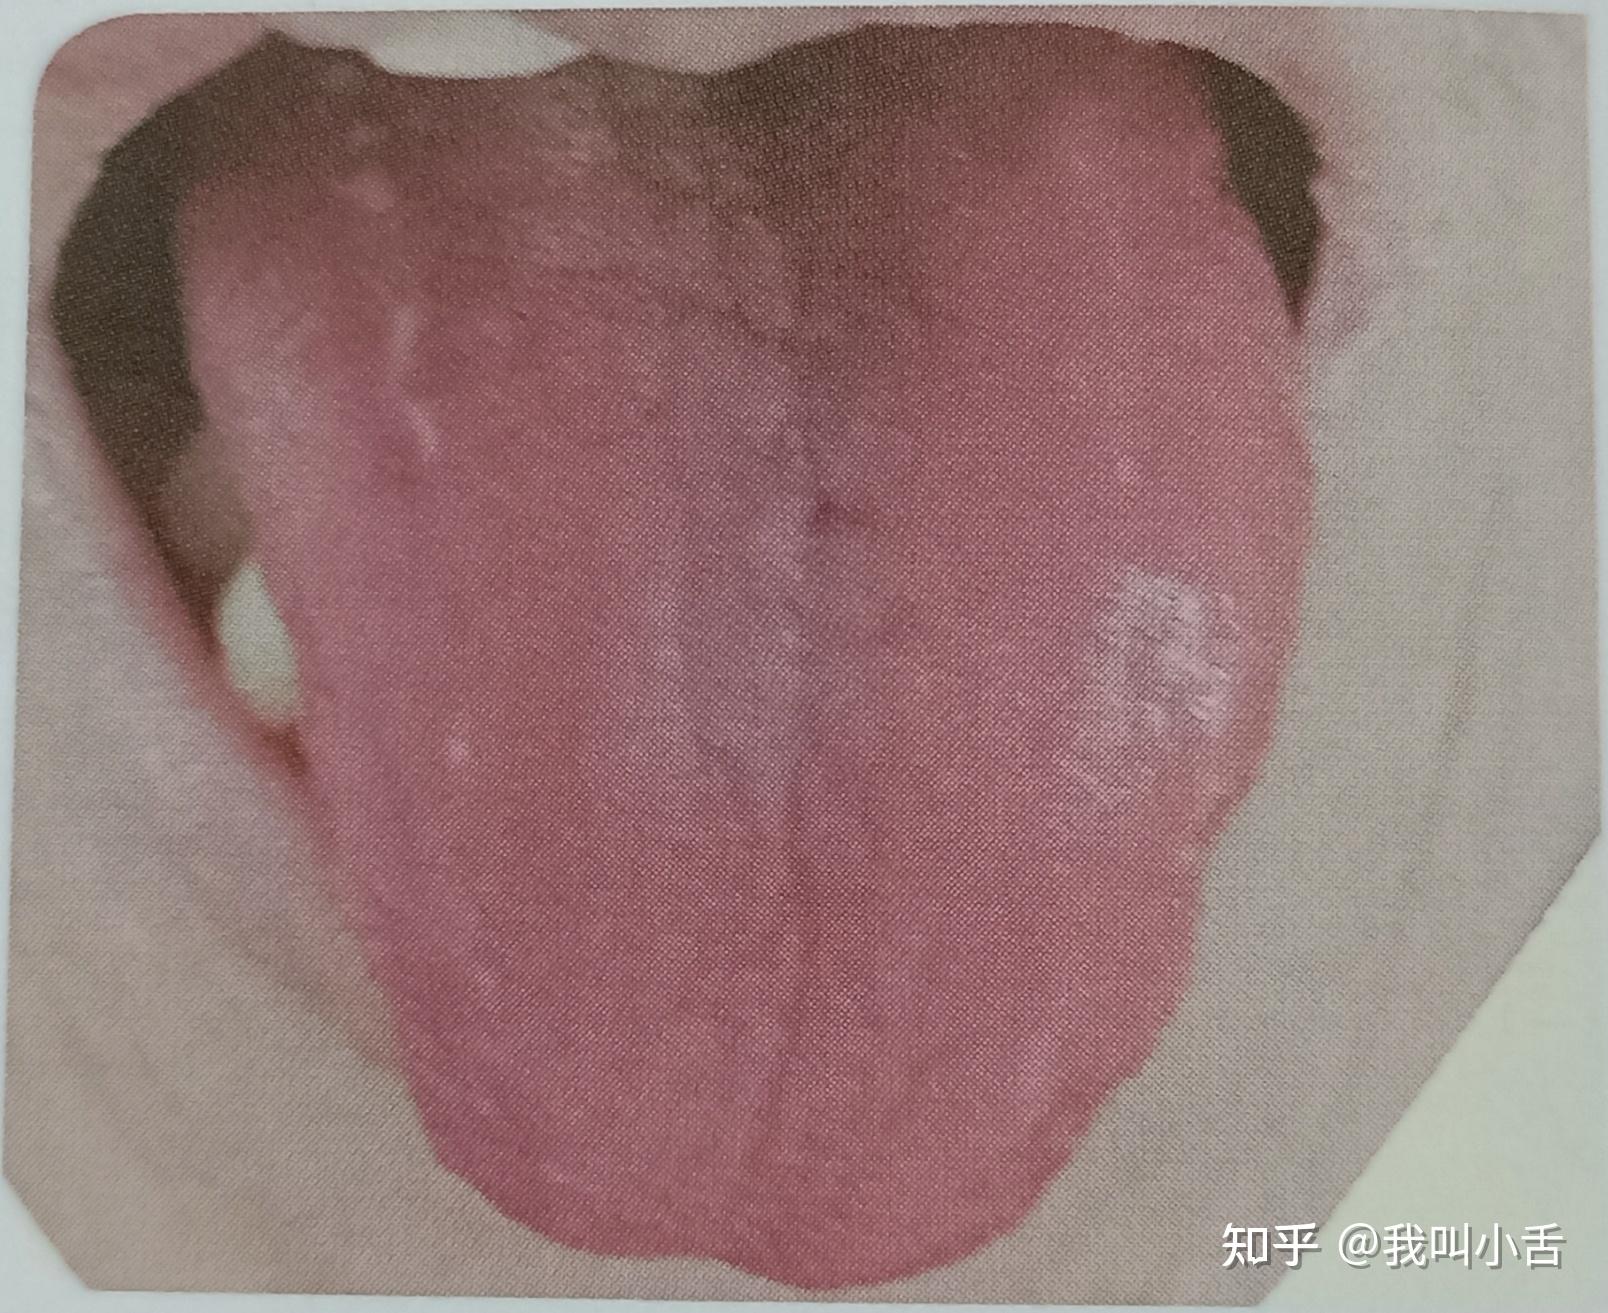 舌癌的早期症状图片 (51)_有来医生